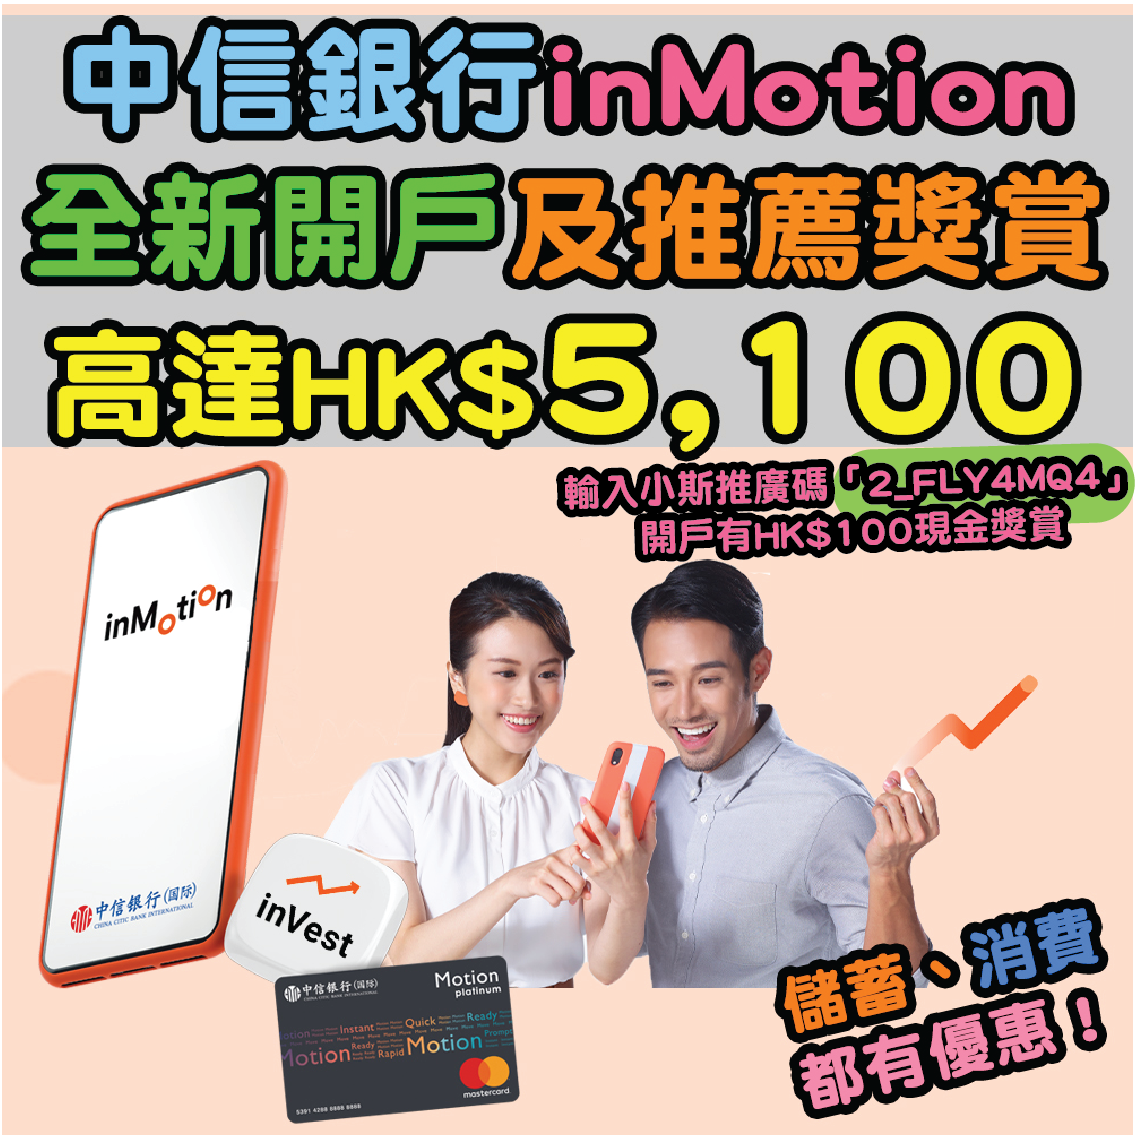 【中信銀行inMotion優惠】全新開戶獎賞高達HK$2,100！推薦獎賞高達HK$3,000！存款年利率高達5.88%！輸入小斯推廣碼「2_FLY4MQ4」開戶再有多額外$100！